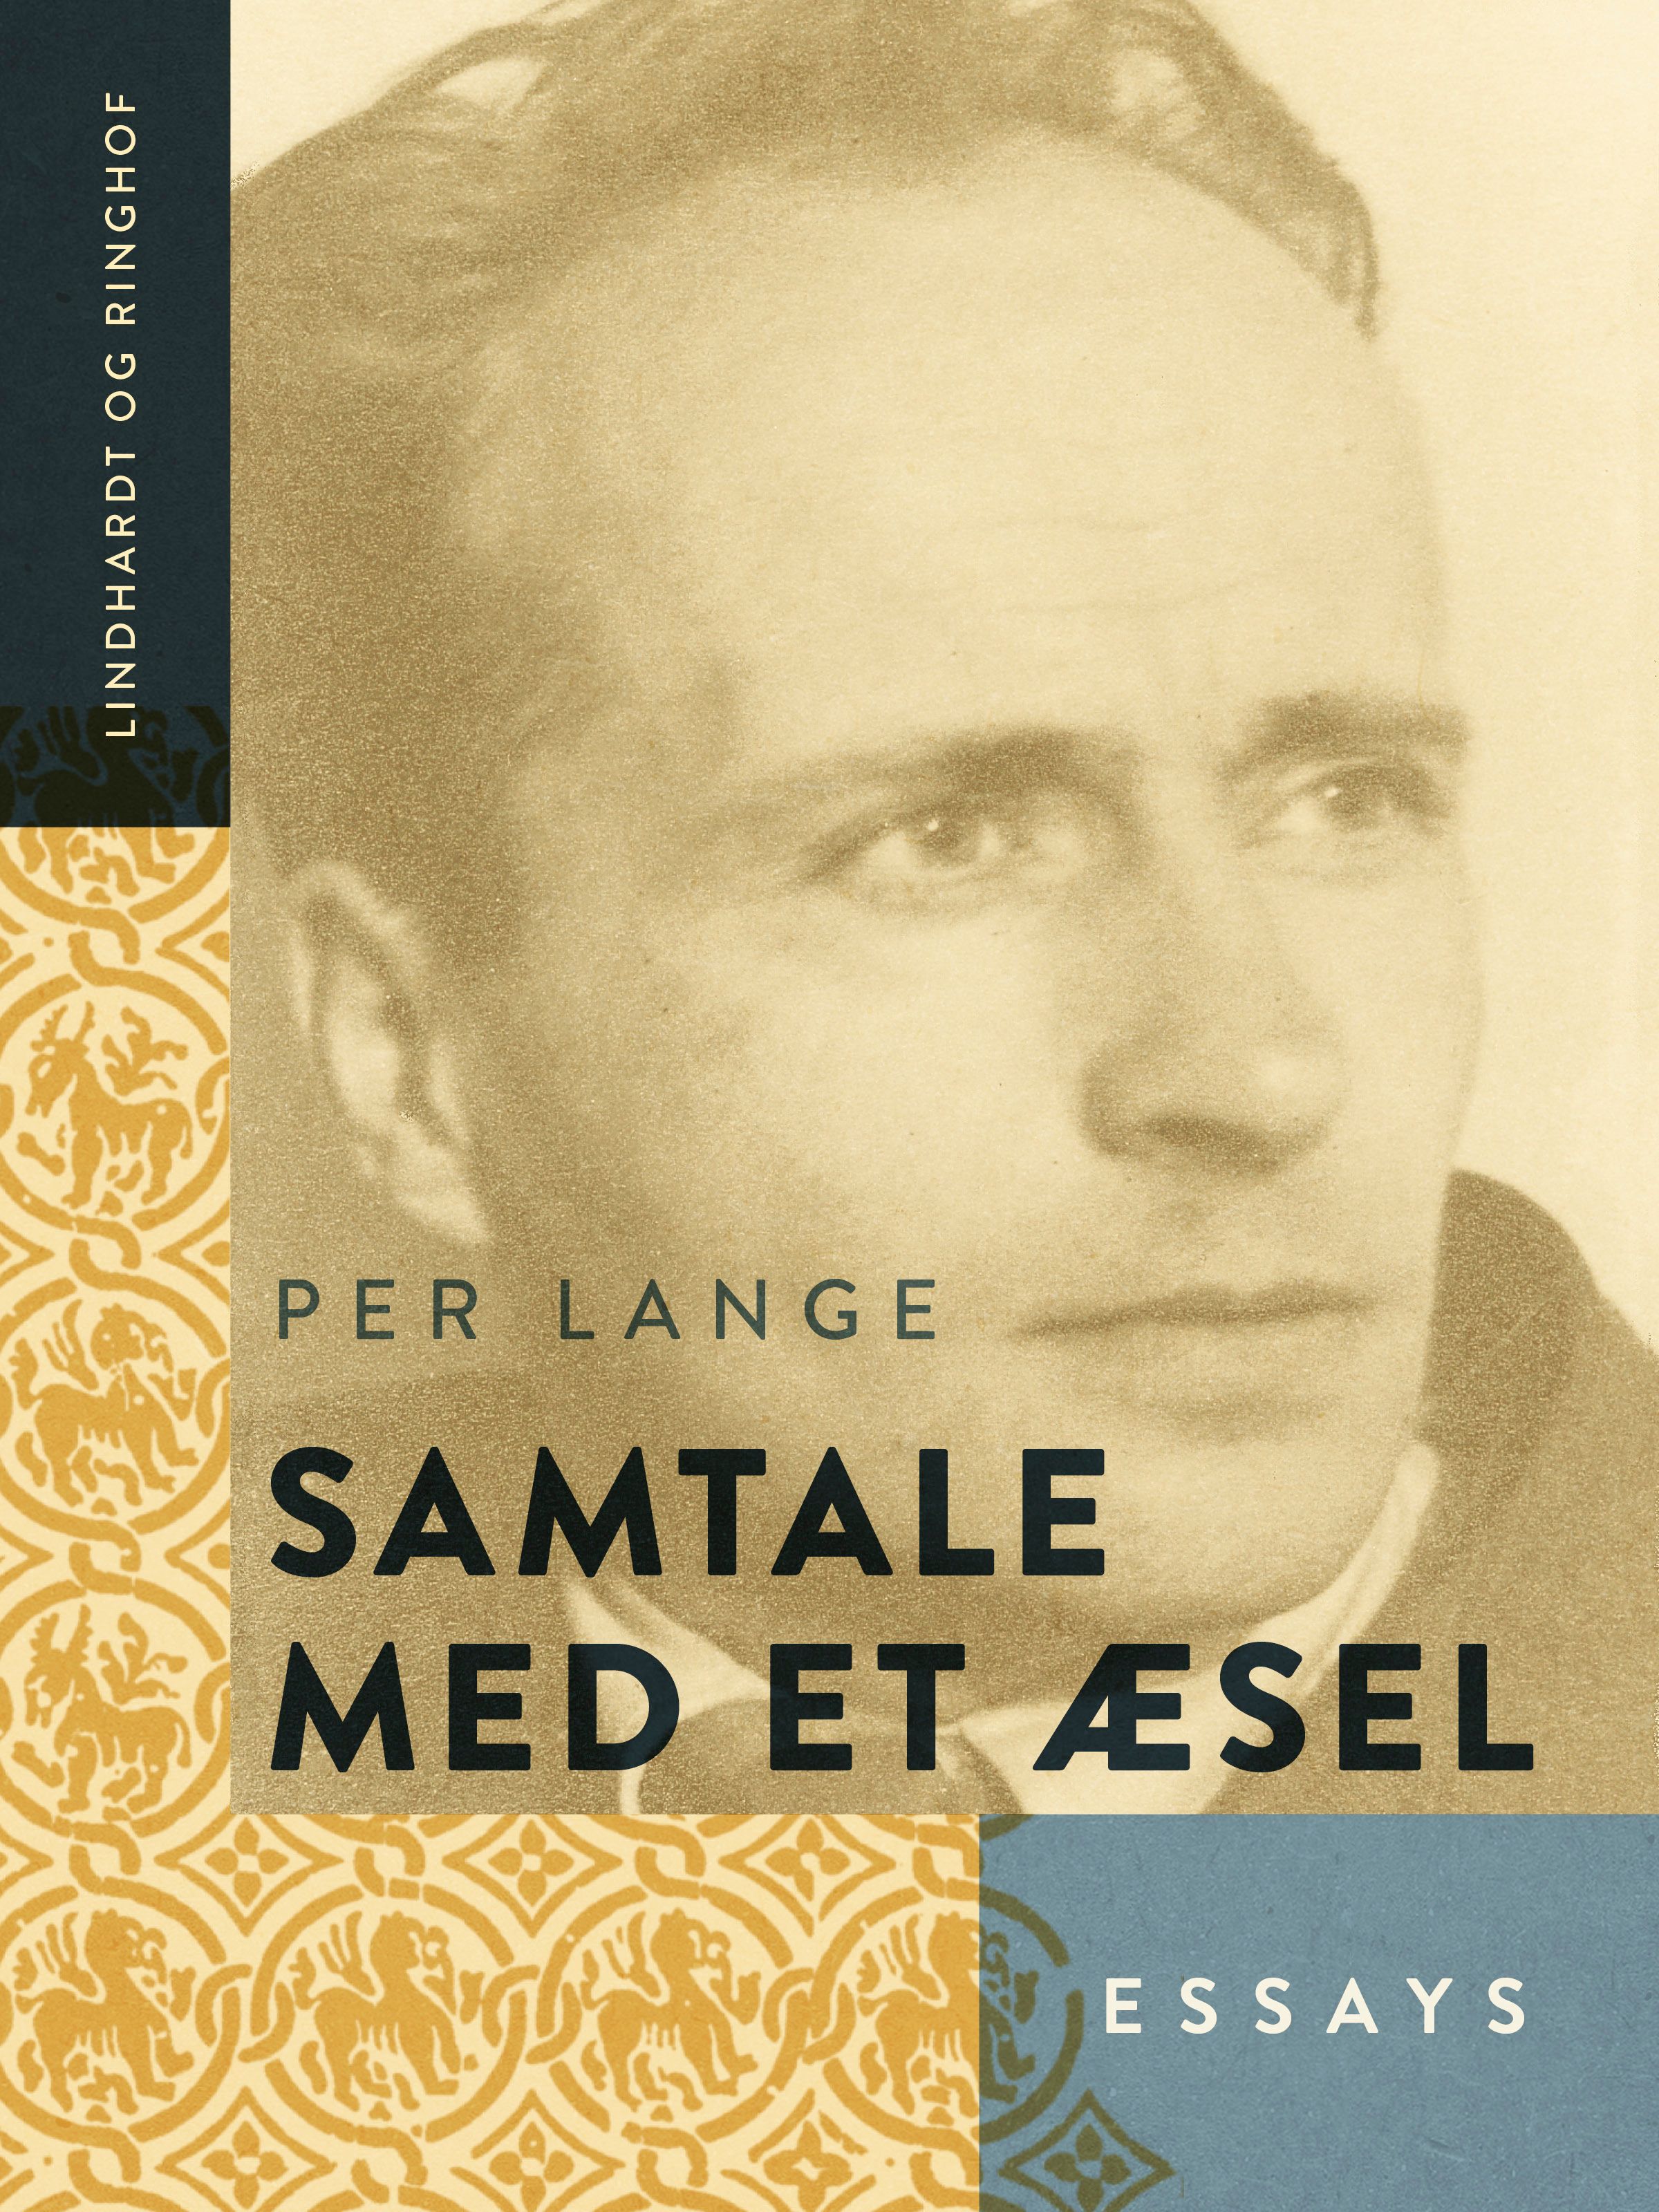 Samtale med et æsel, e-bok av Per Lange